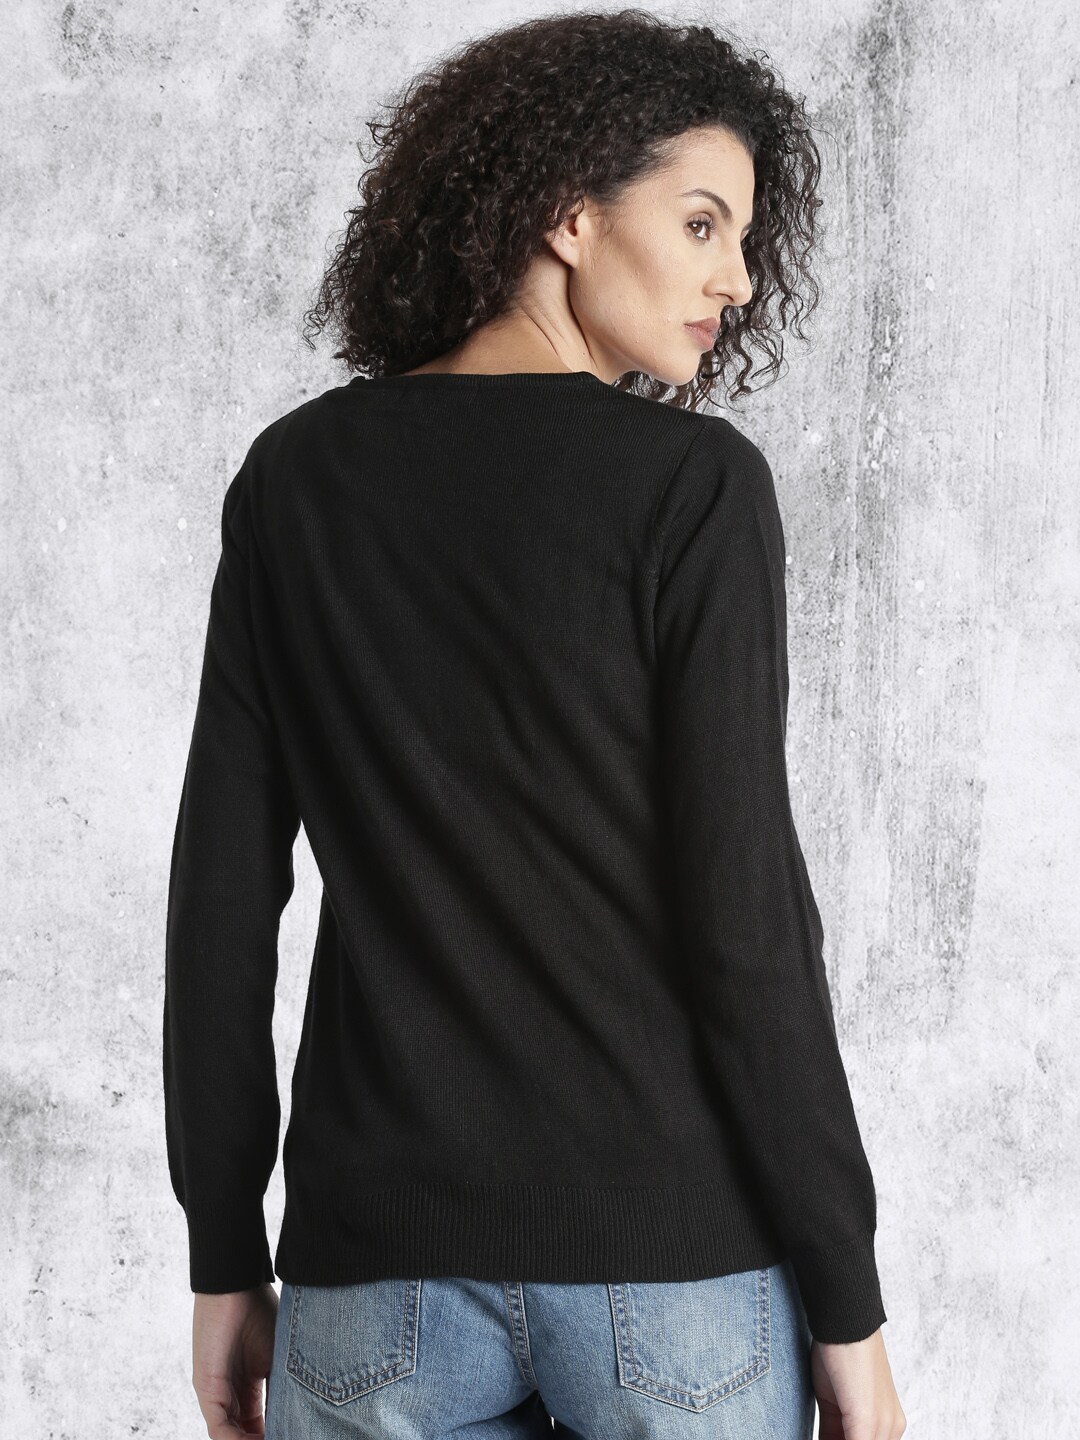 Sweaters for Women - Buy Womens Sweaters Online - Myntra